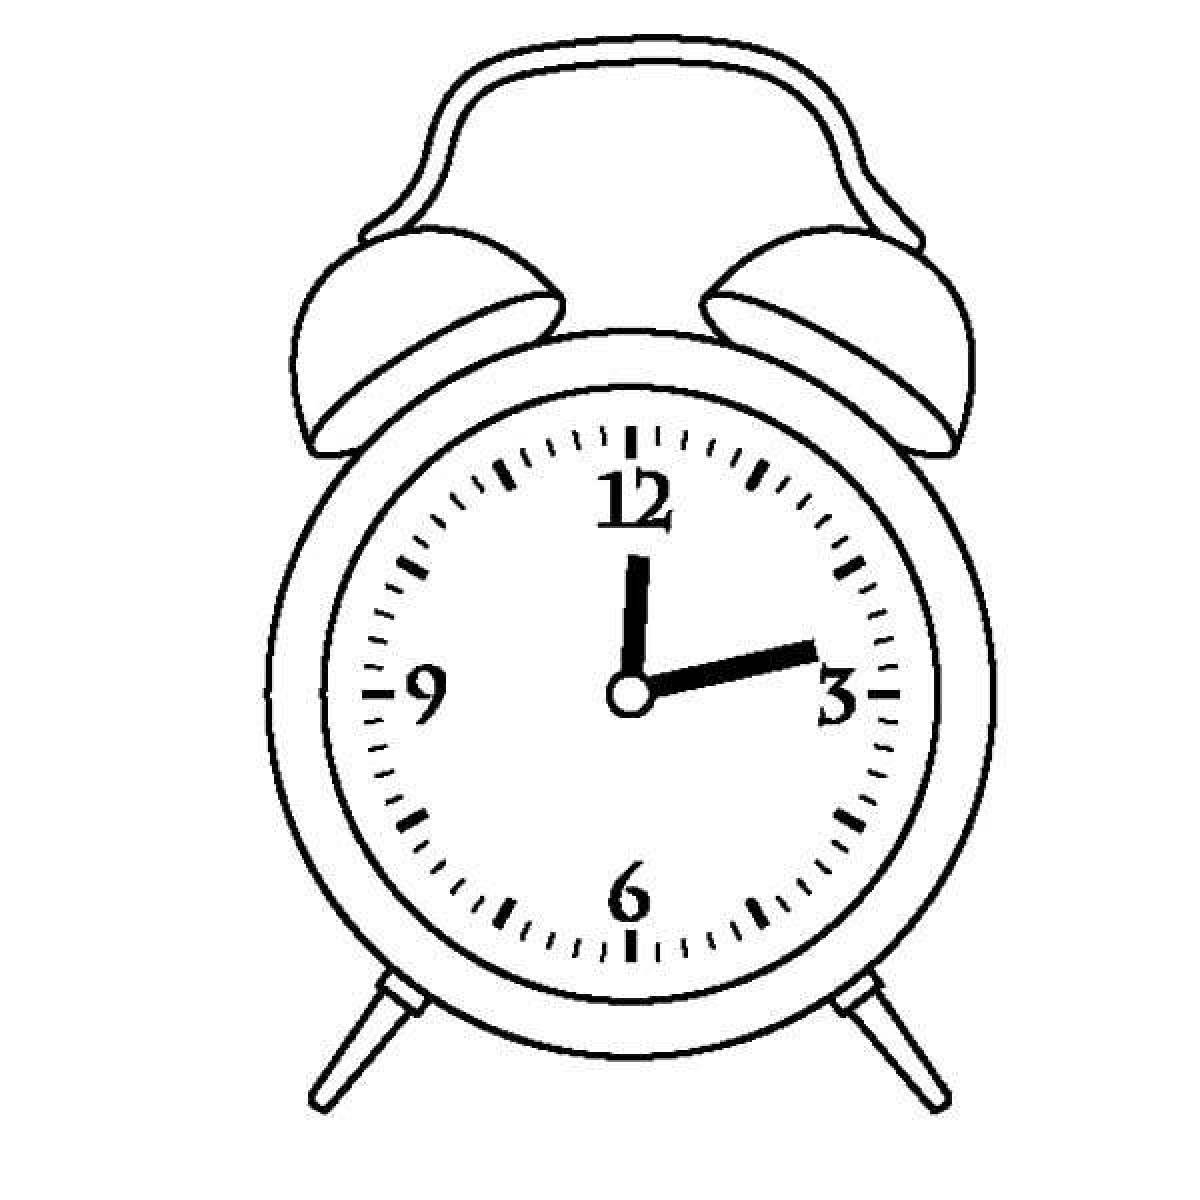 Attractive alarm clock coloring page